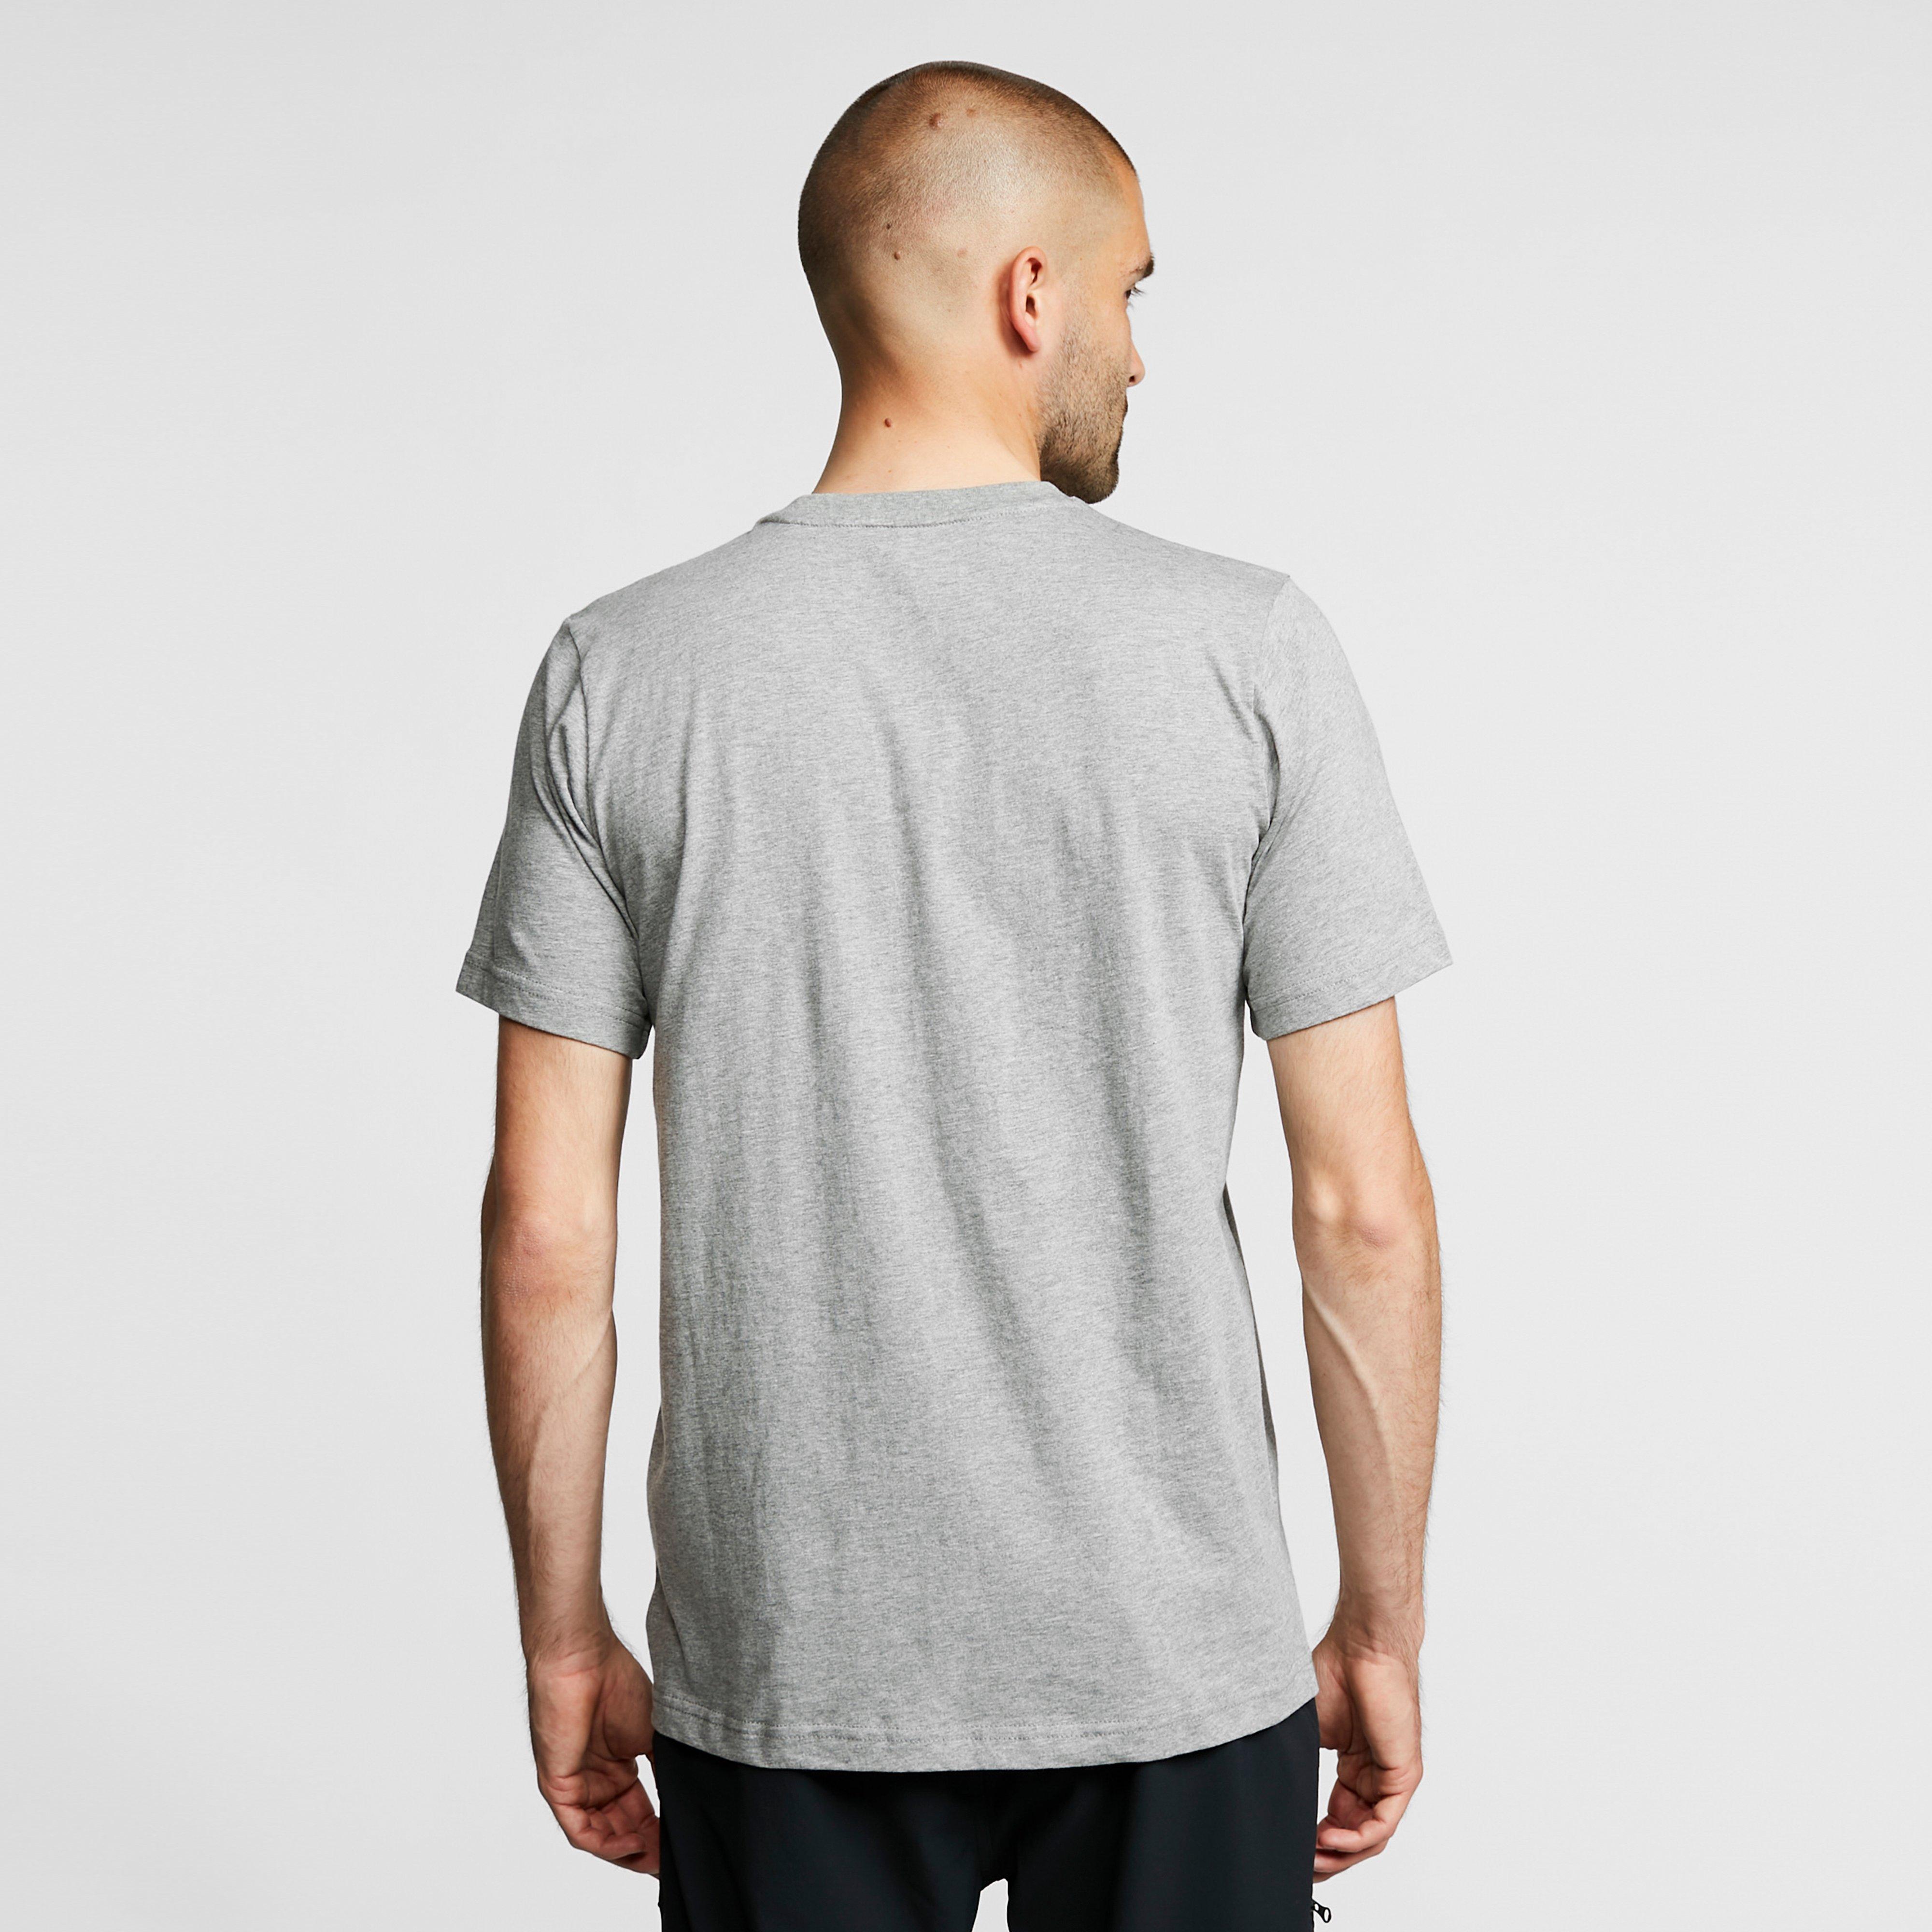 Berghaus Large Logo T-Shirt Review